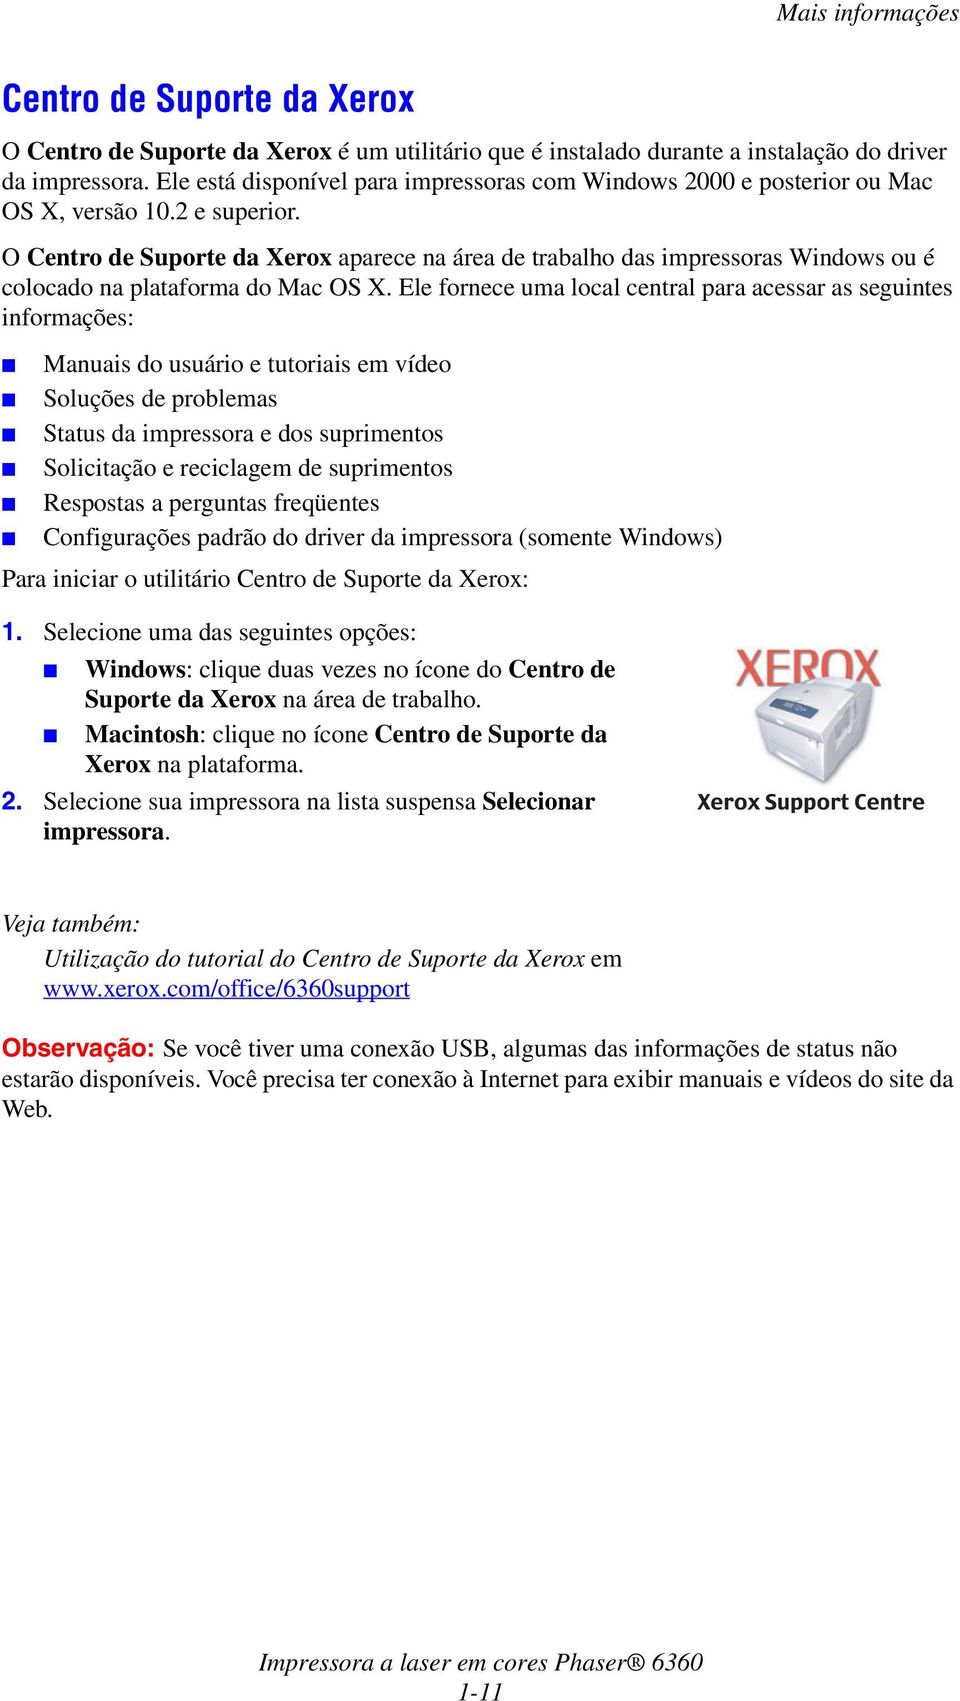 O Centro de Suporte da Xerox aparece na área de trabalho das impressoras Windows ou é colocado na plataforma do Mac OS X.